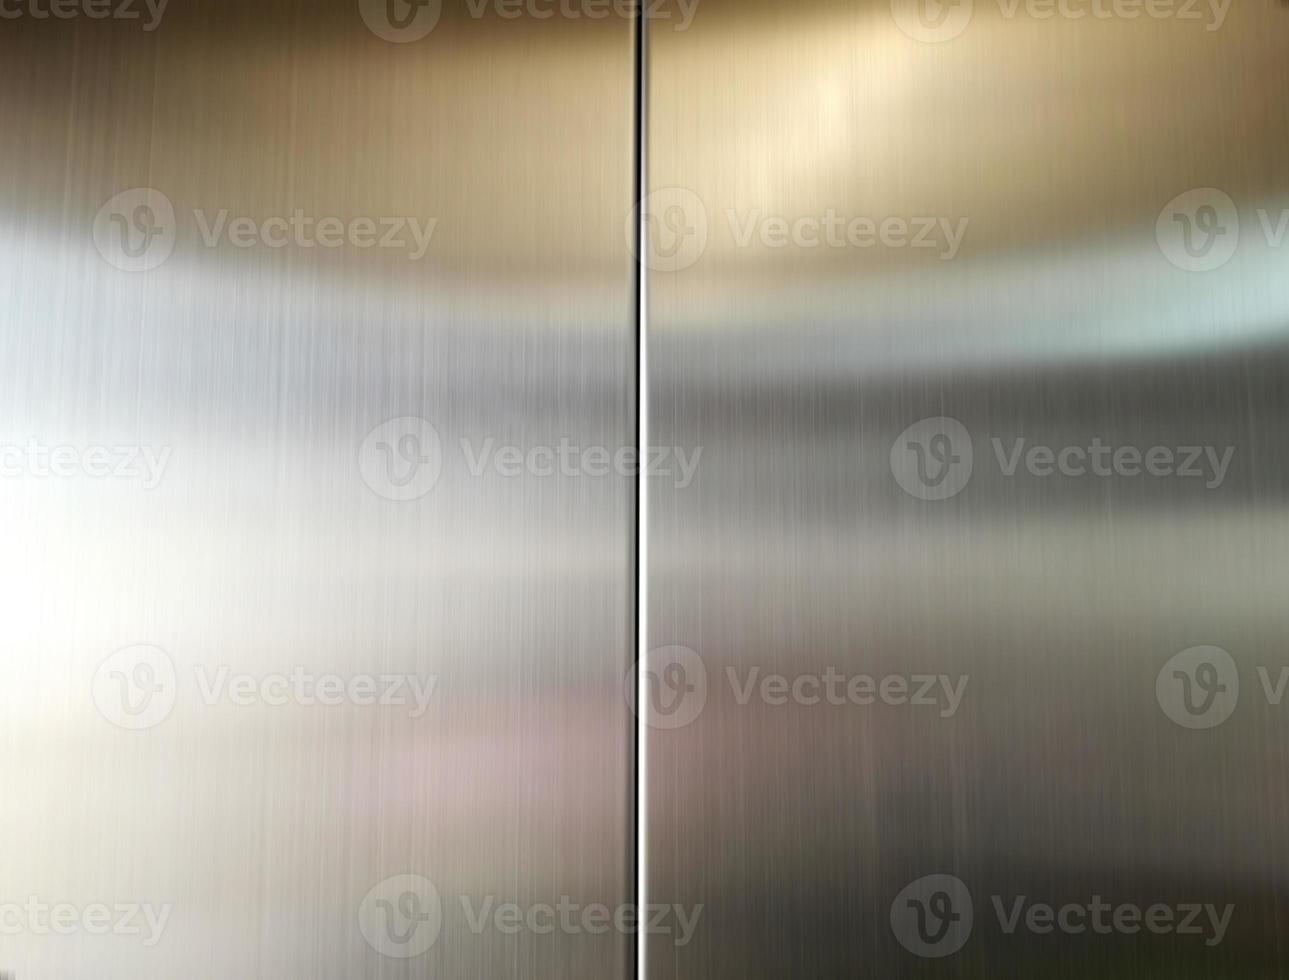 grande feuille d'acier inoxydable avec lumière frappant la surface pour le fond, à l'intérieur de l'ascenseur de passagers, réflexion de la lumière sur une texture métallique brillante, fond en acier inoxydable. photo